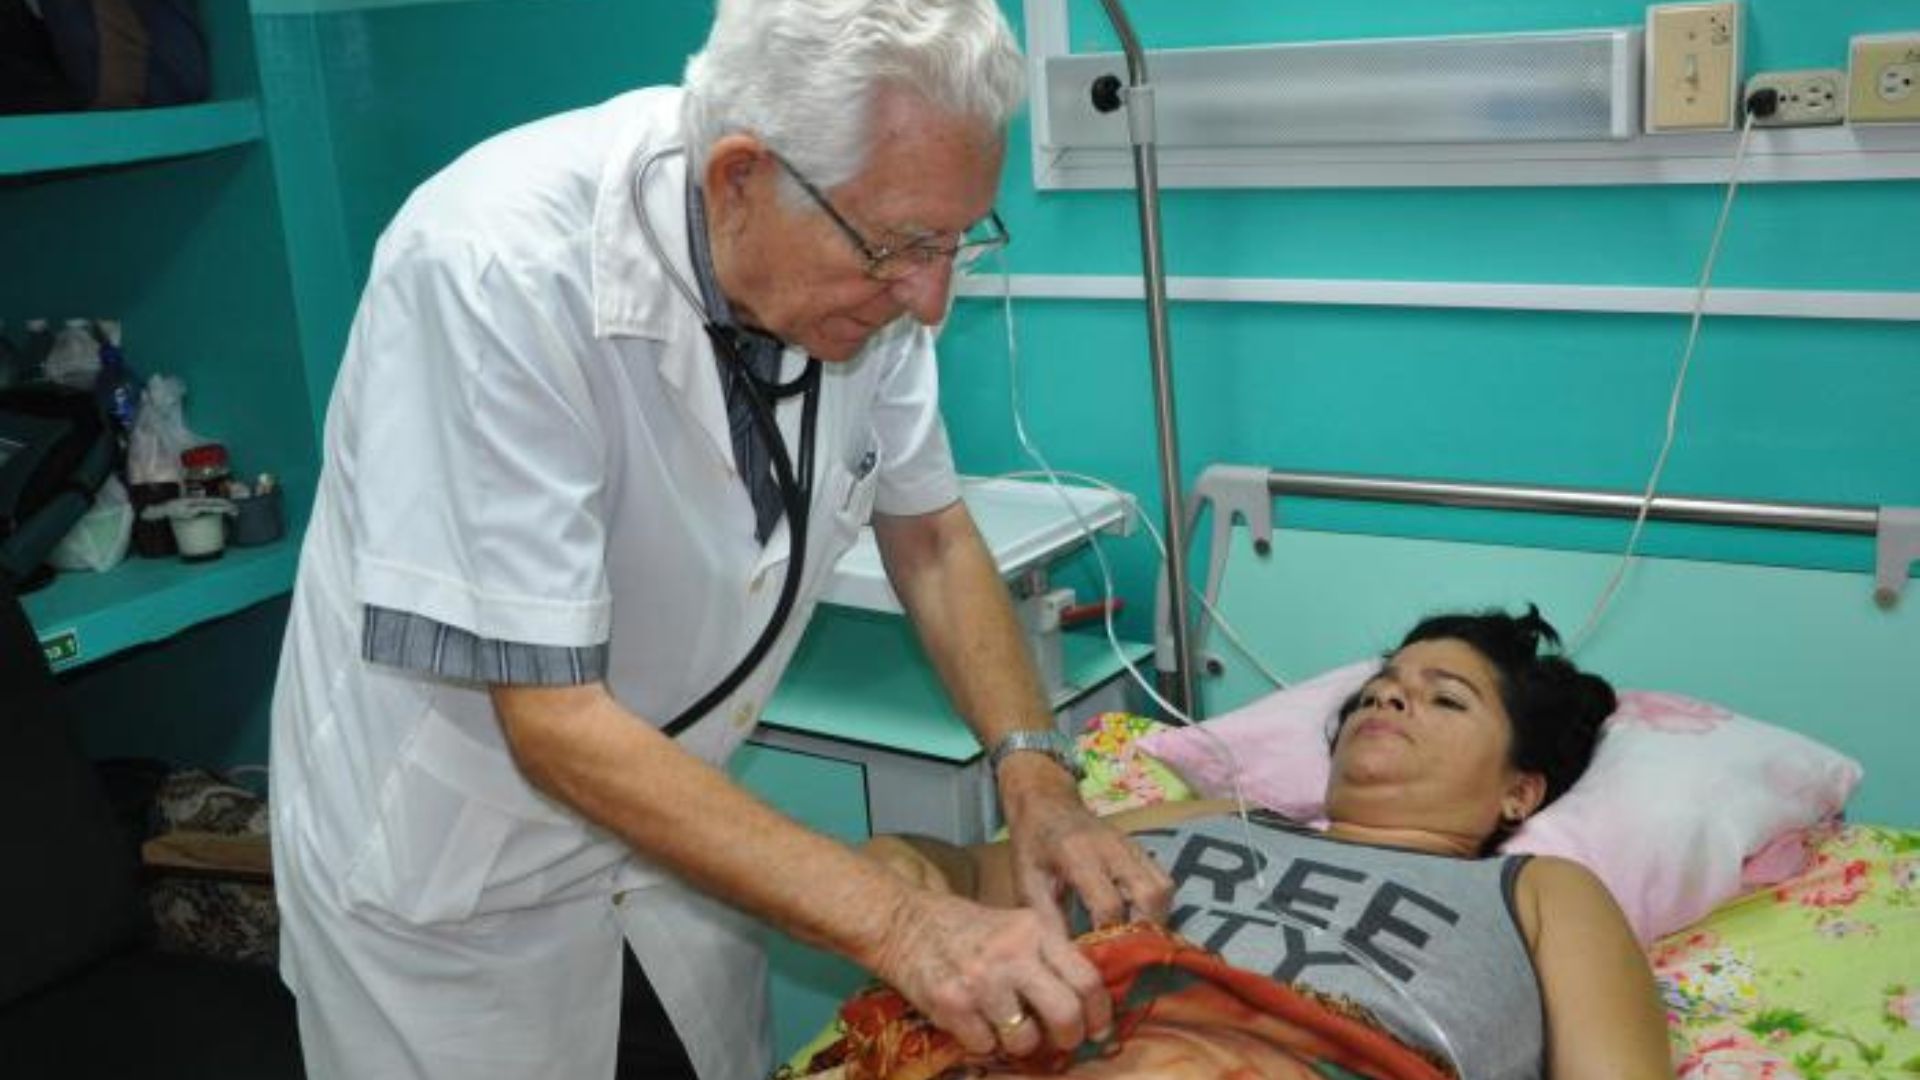 Médico cubano consultando a paciente. Foto ilustrativa. Granma/Efraín Cedeño